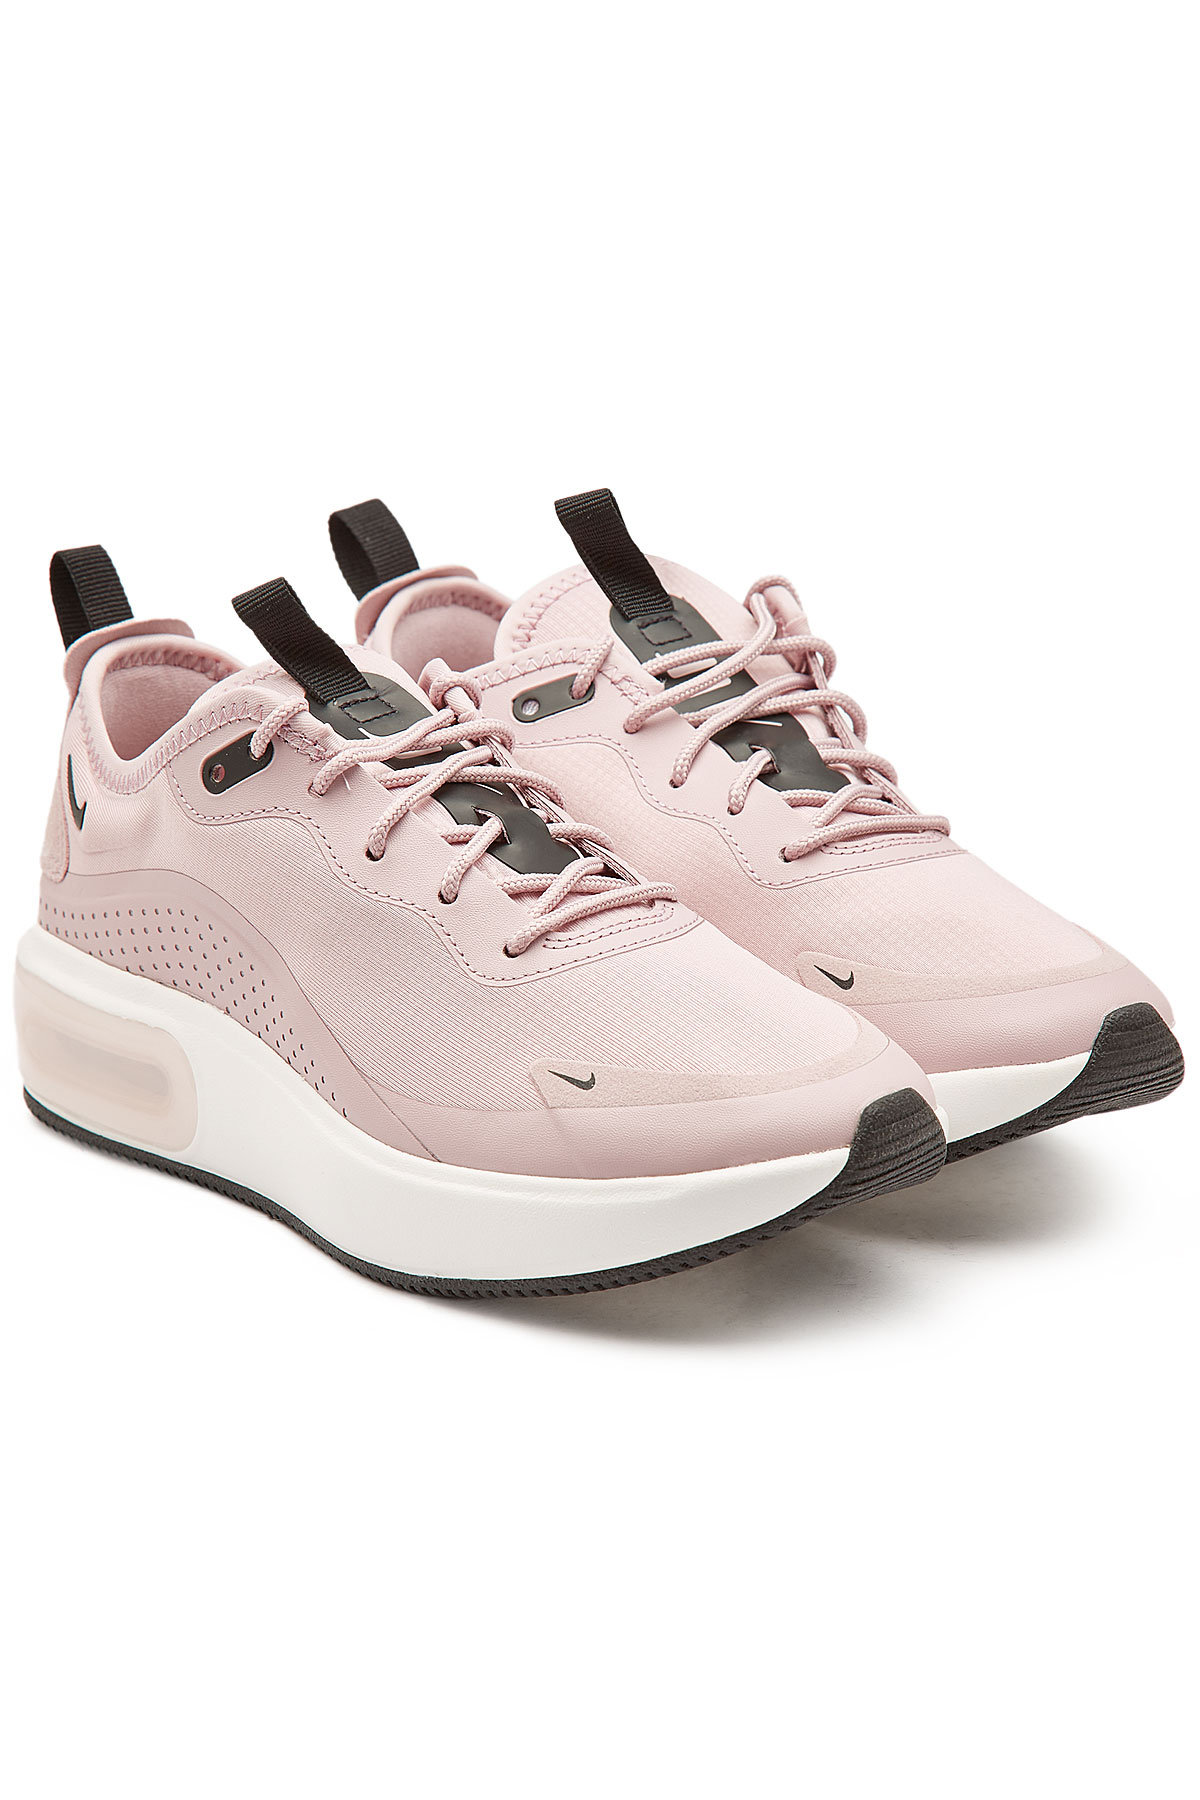 Nike Air Max Dia Sneakers In Pink 